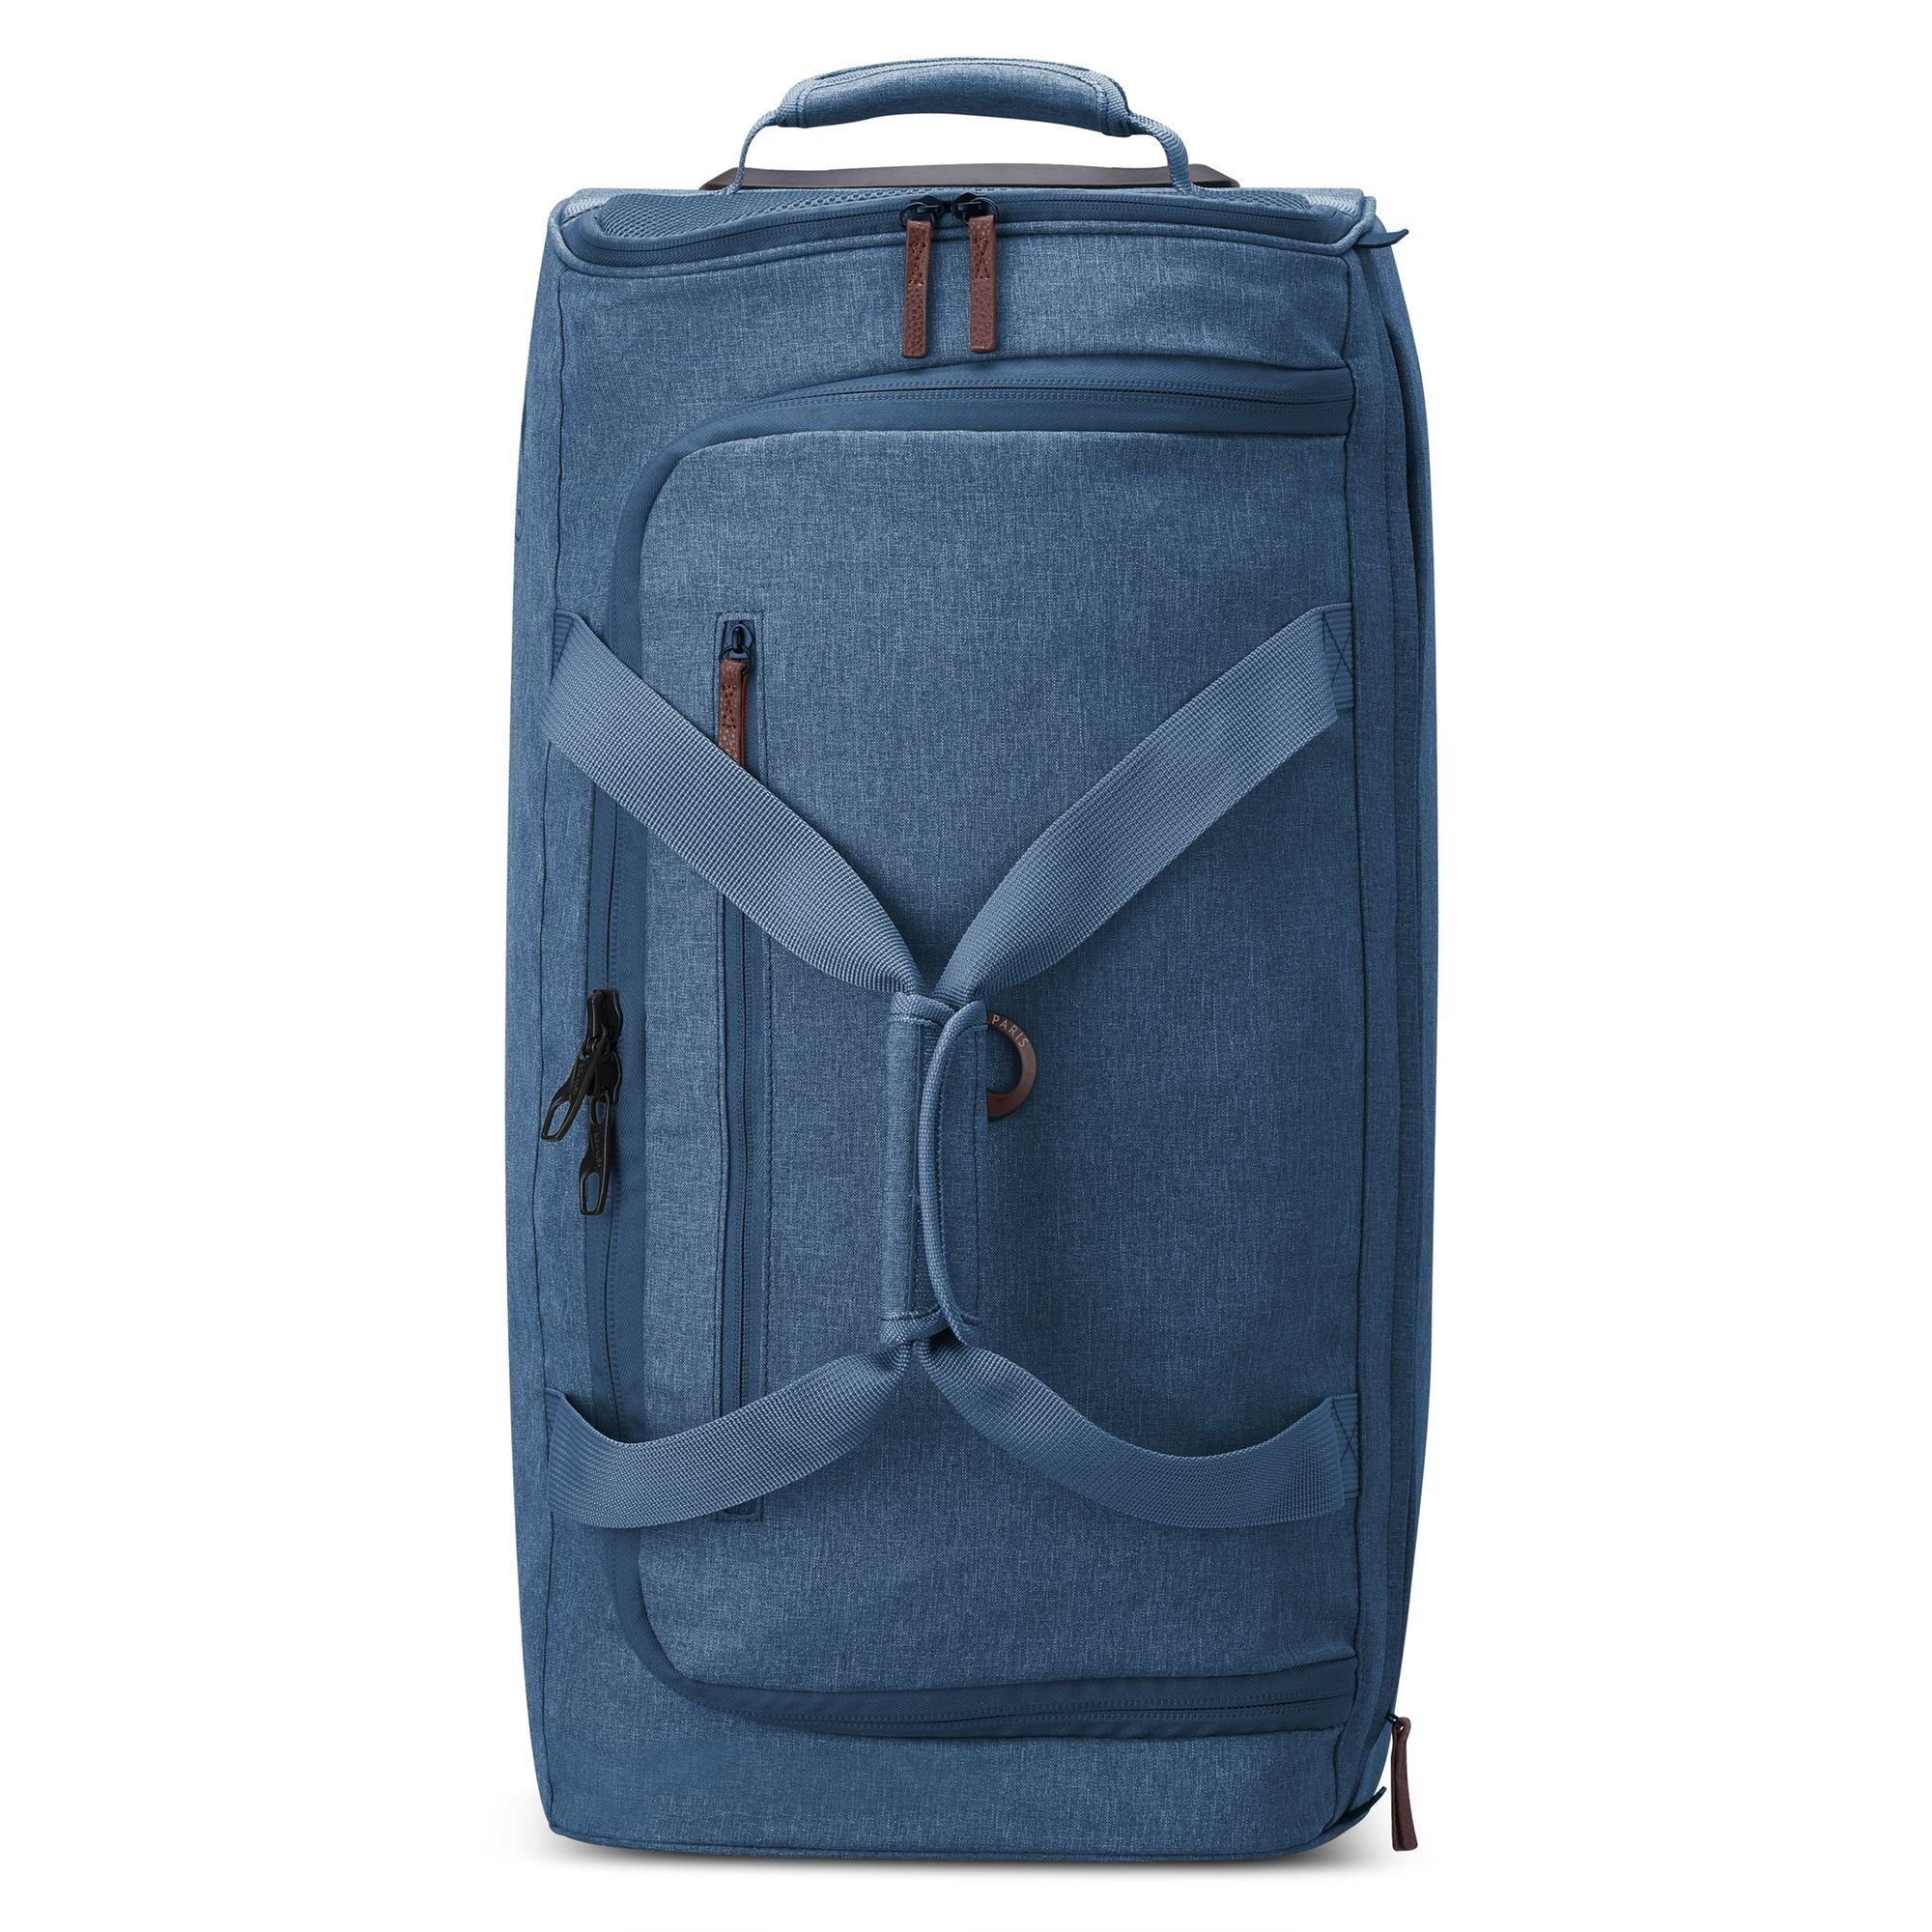 [Vertrauen zuerst, Qualität zuerst] Delsey Reisetasche Maubert 2.0, Polyester blau